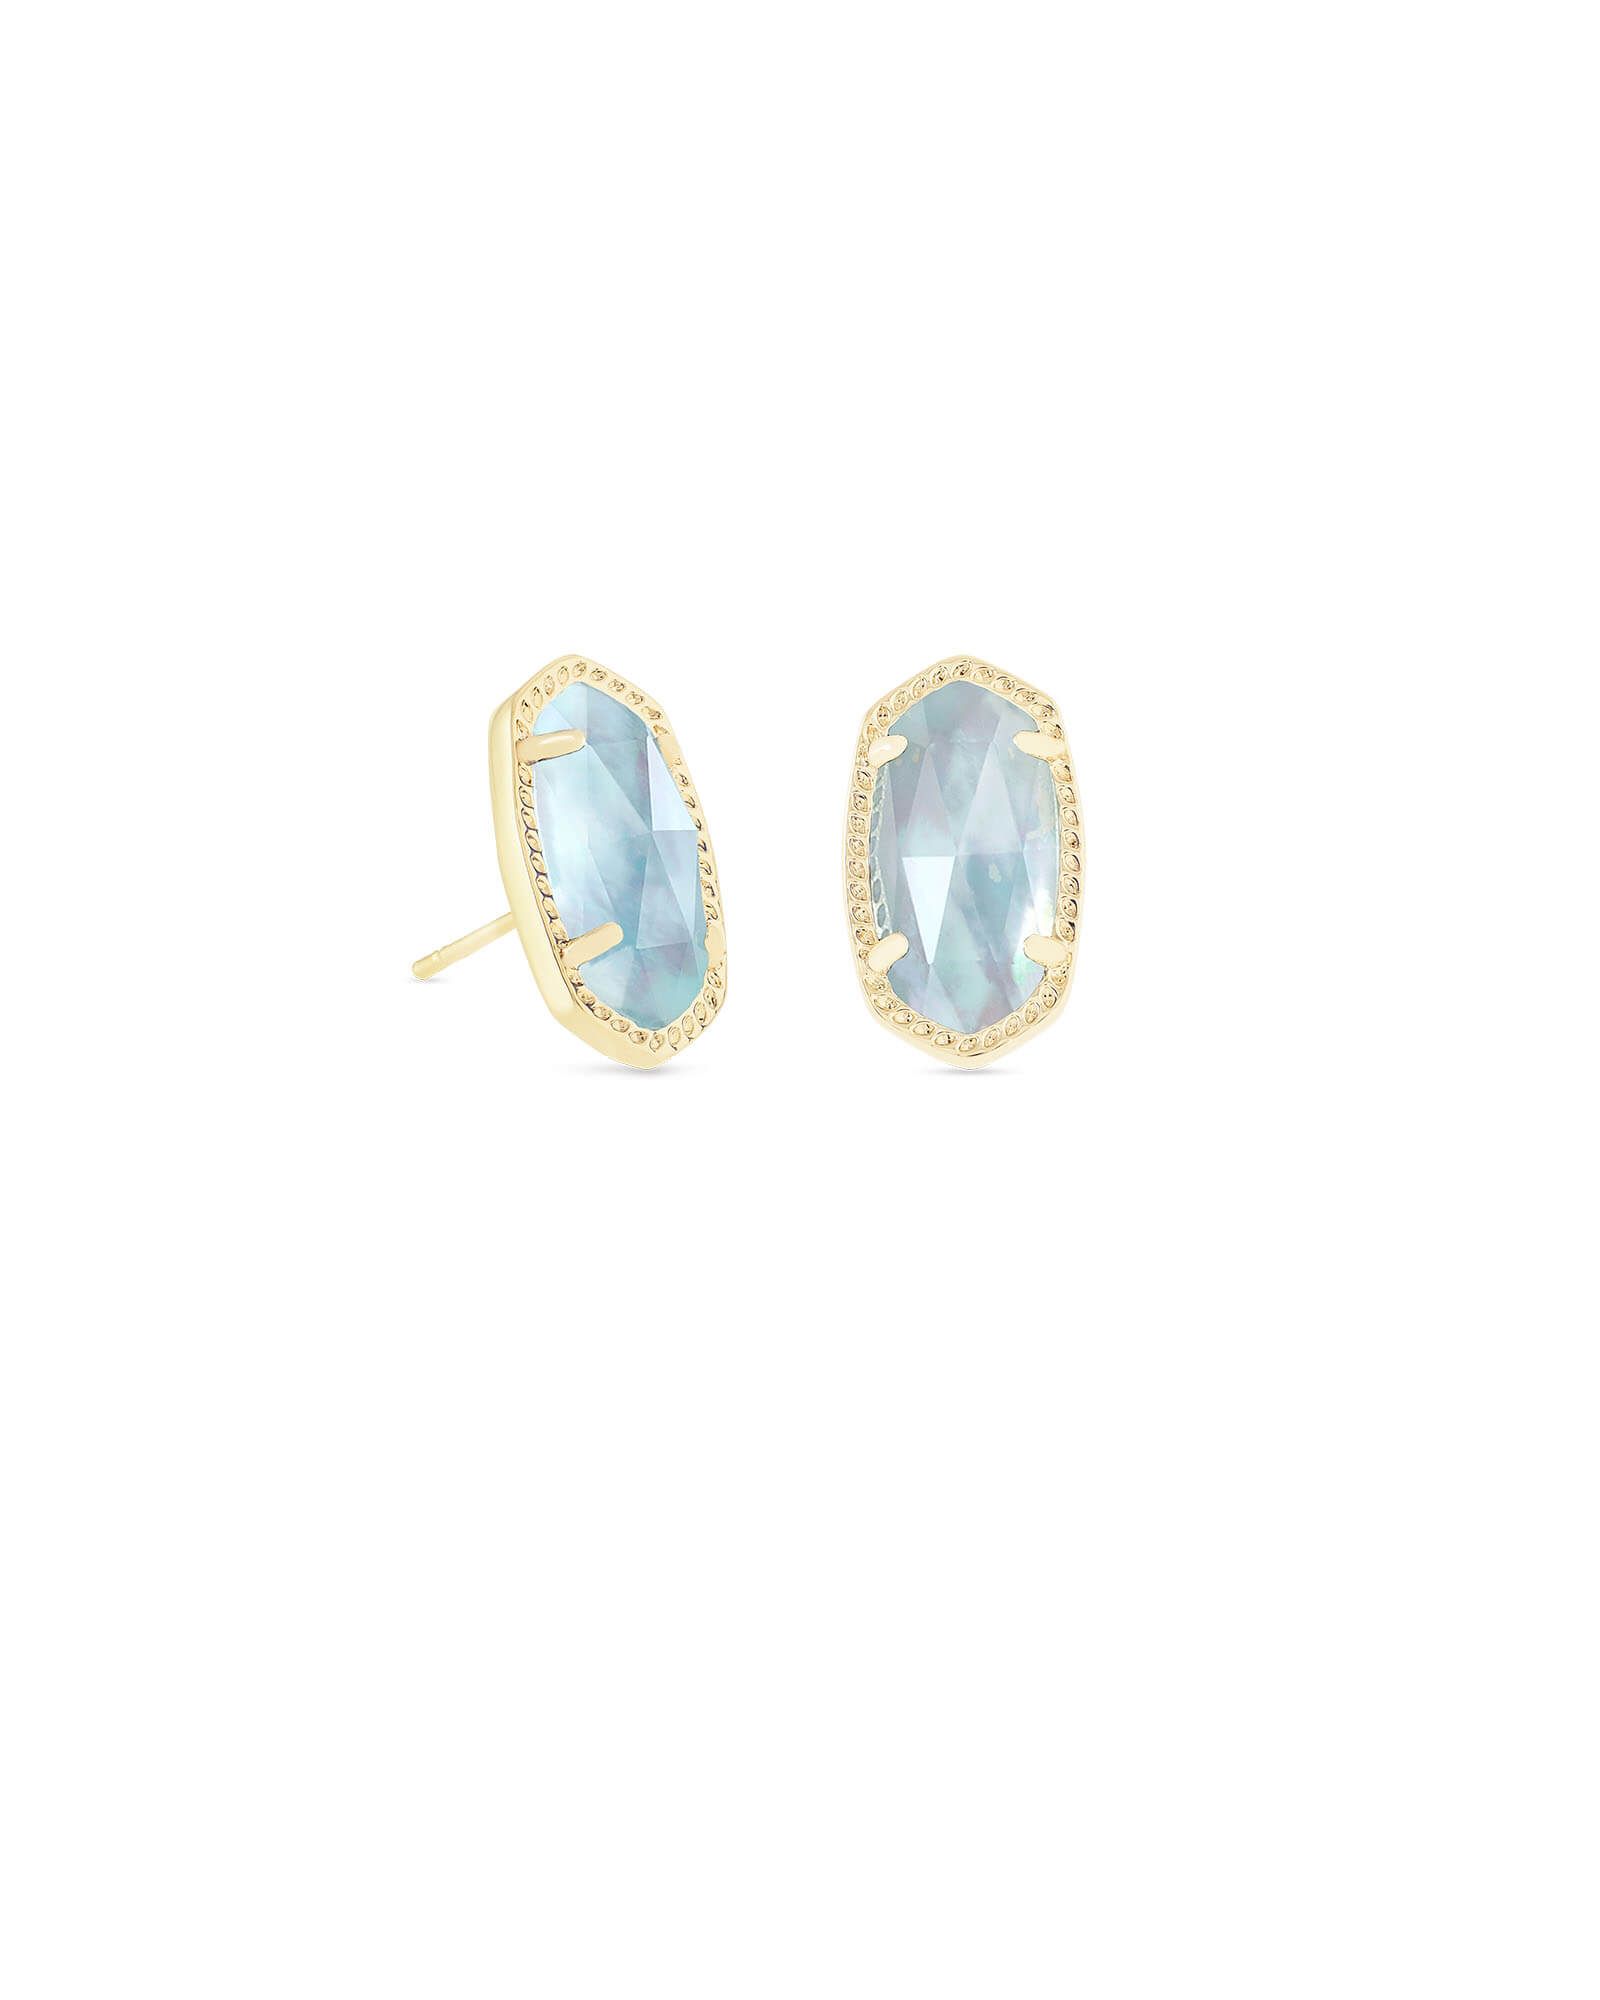 Ellie Gold Stud Earrings in Light Blue Illusion | Kendra Scott